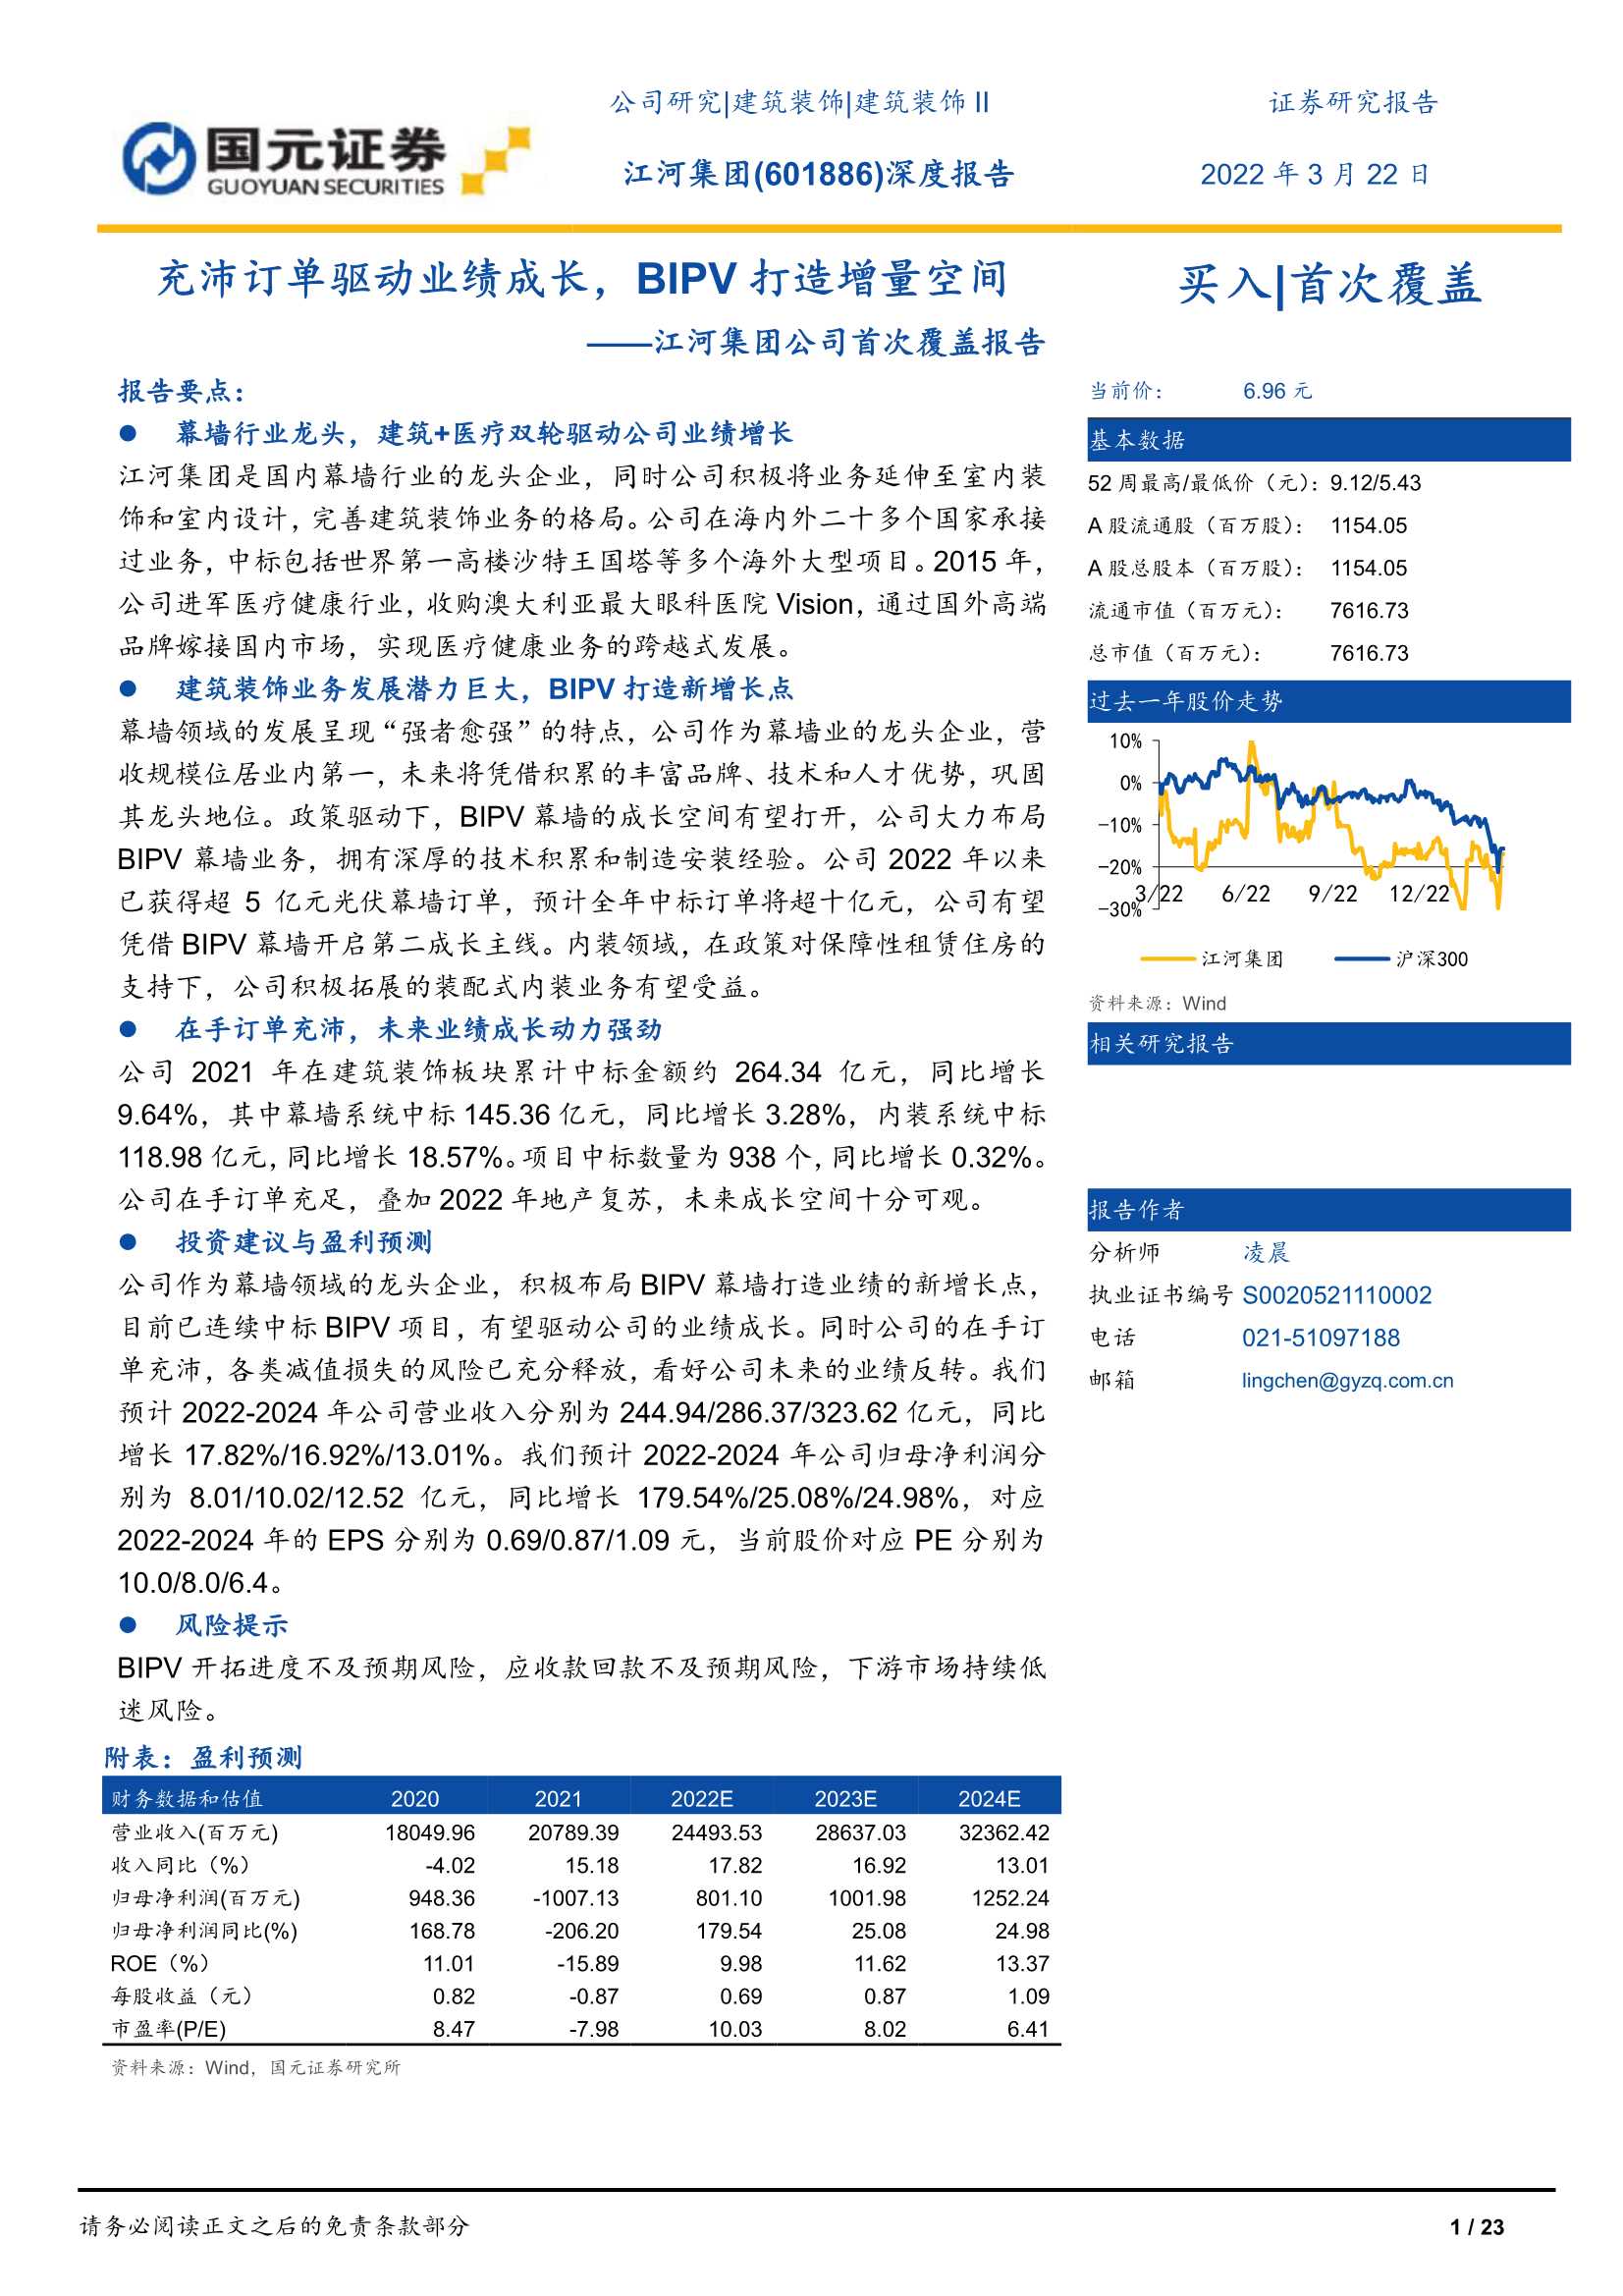 国元证券-江河集团-601886-公司首次覆盖报告：充沛订单驱动业绩成长，BIPV打造增量空间-20220322-23页